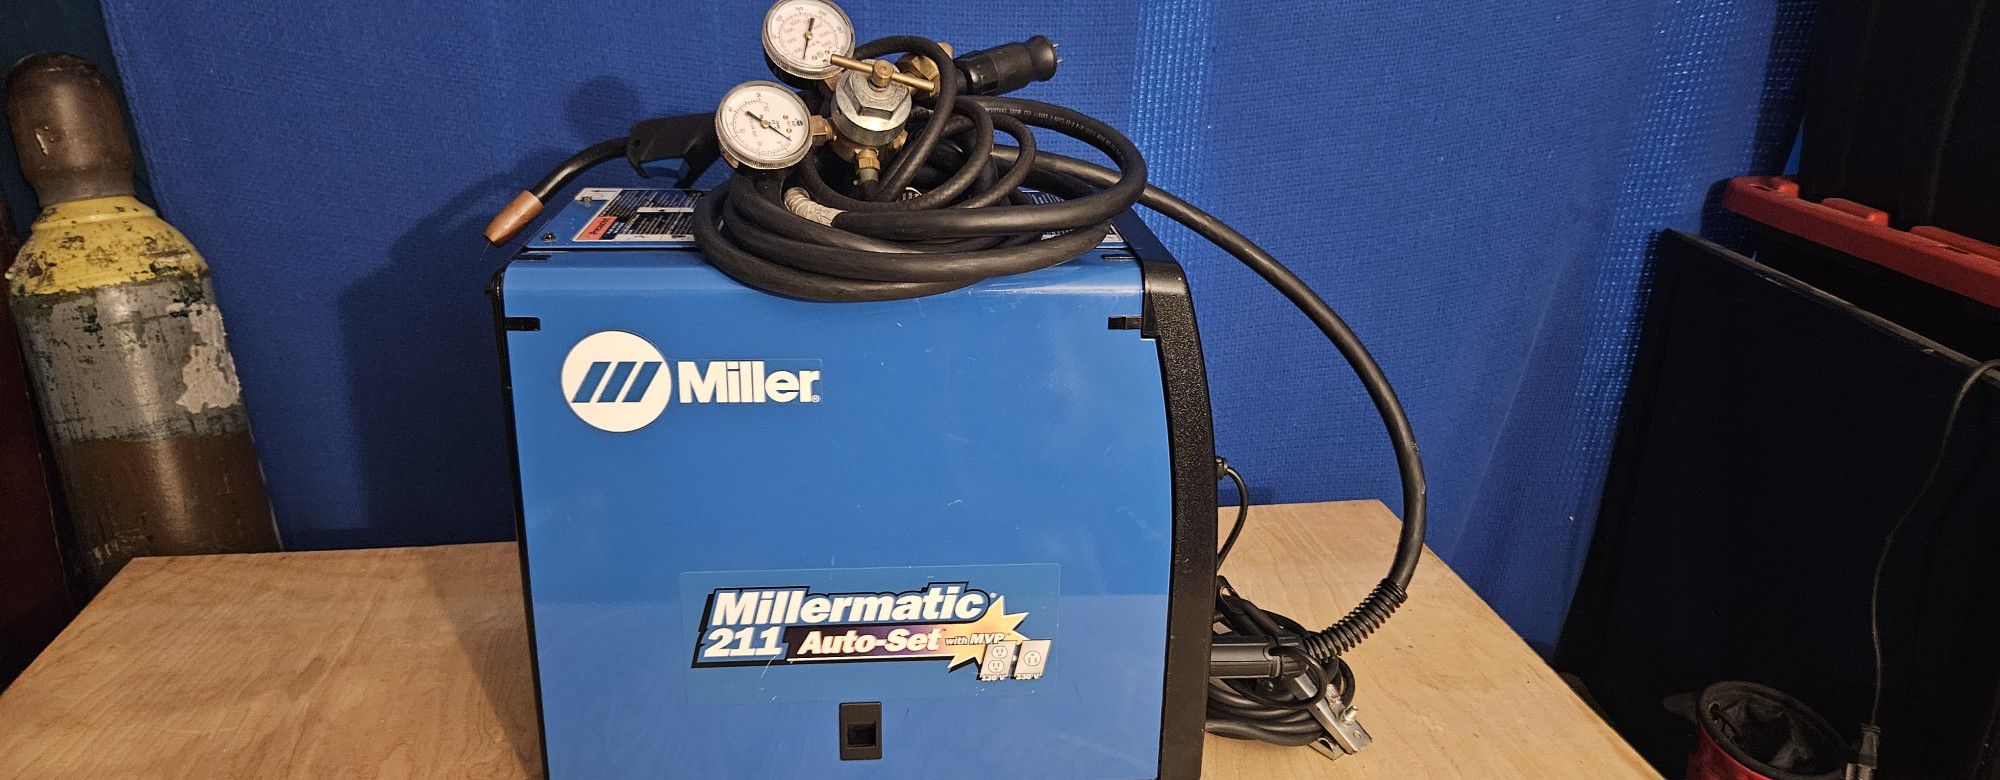 Miller Millermatic Auto-set Mig Welder